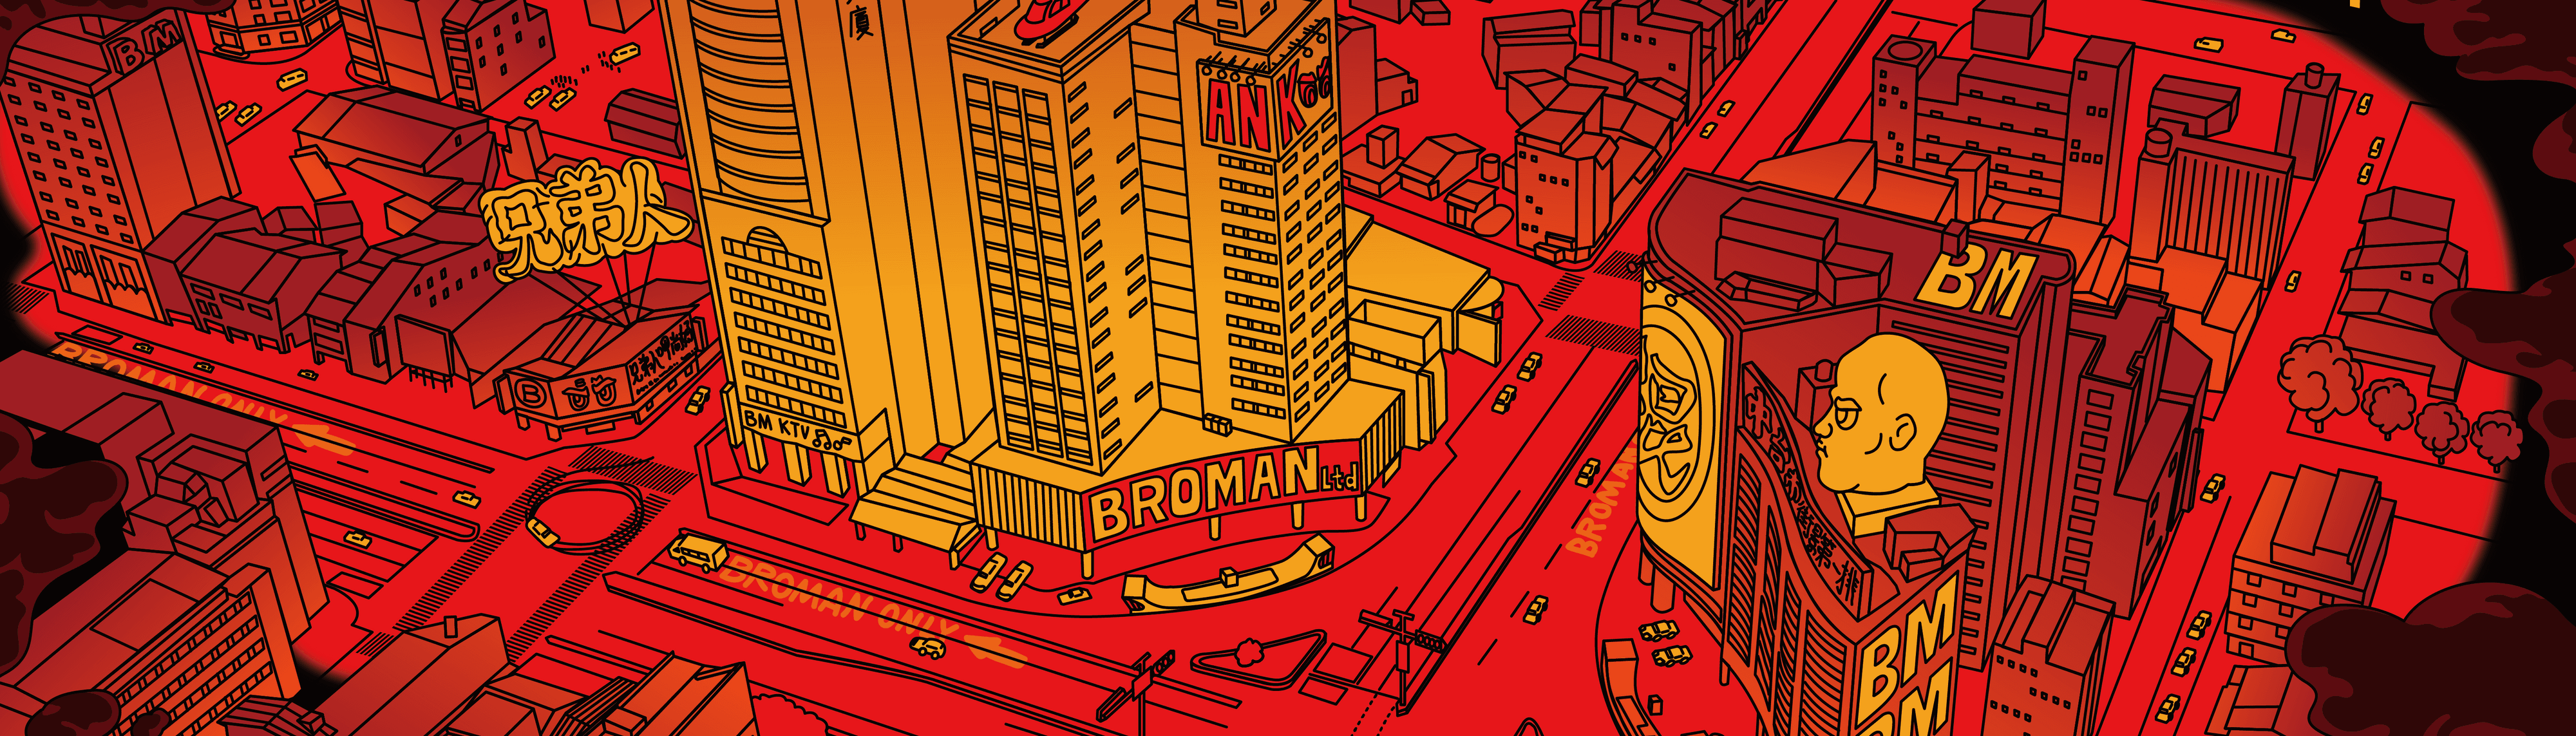 Broman-NFT banner